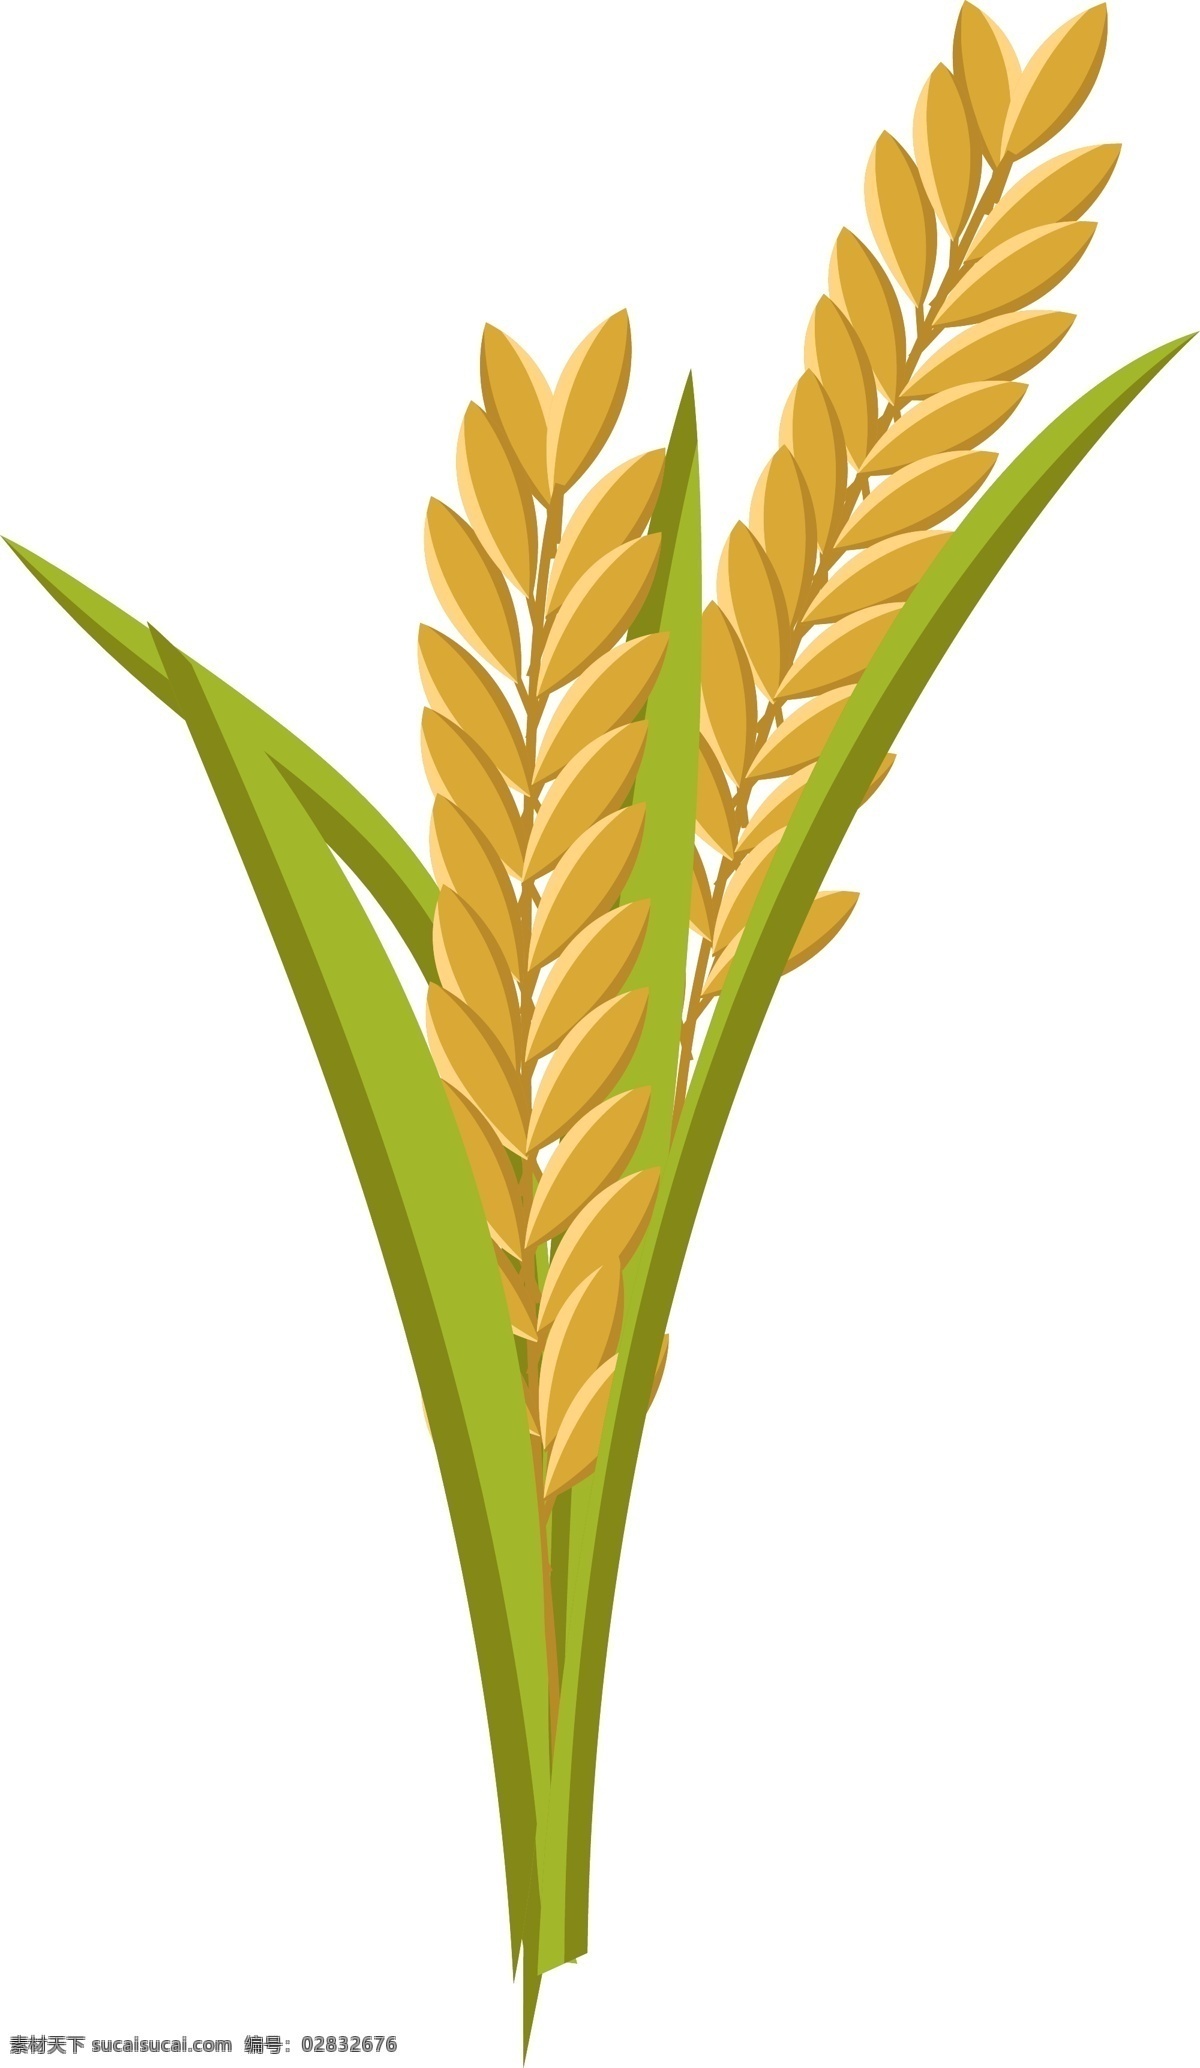 卡通 矢量 金黄 麦穗 卡通矢量 小麦 麦子 收货 小满 麦田 农民 田地 节约食物 光盘行动